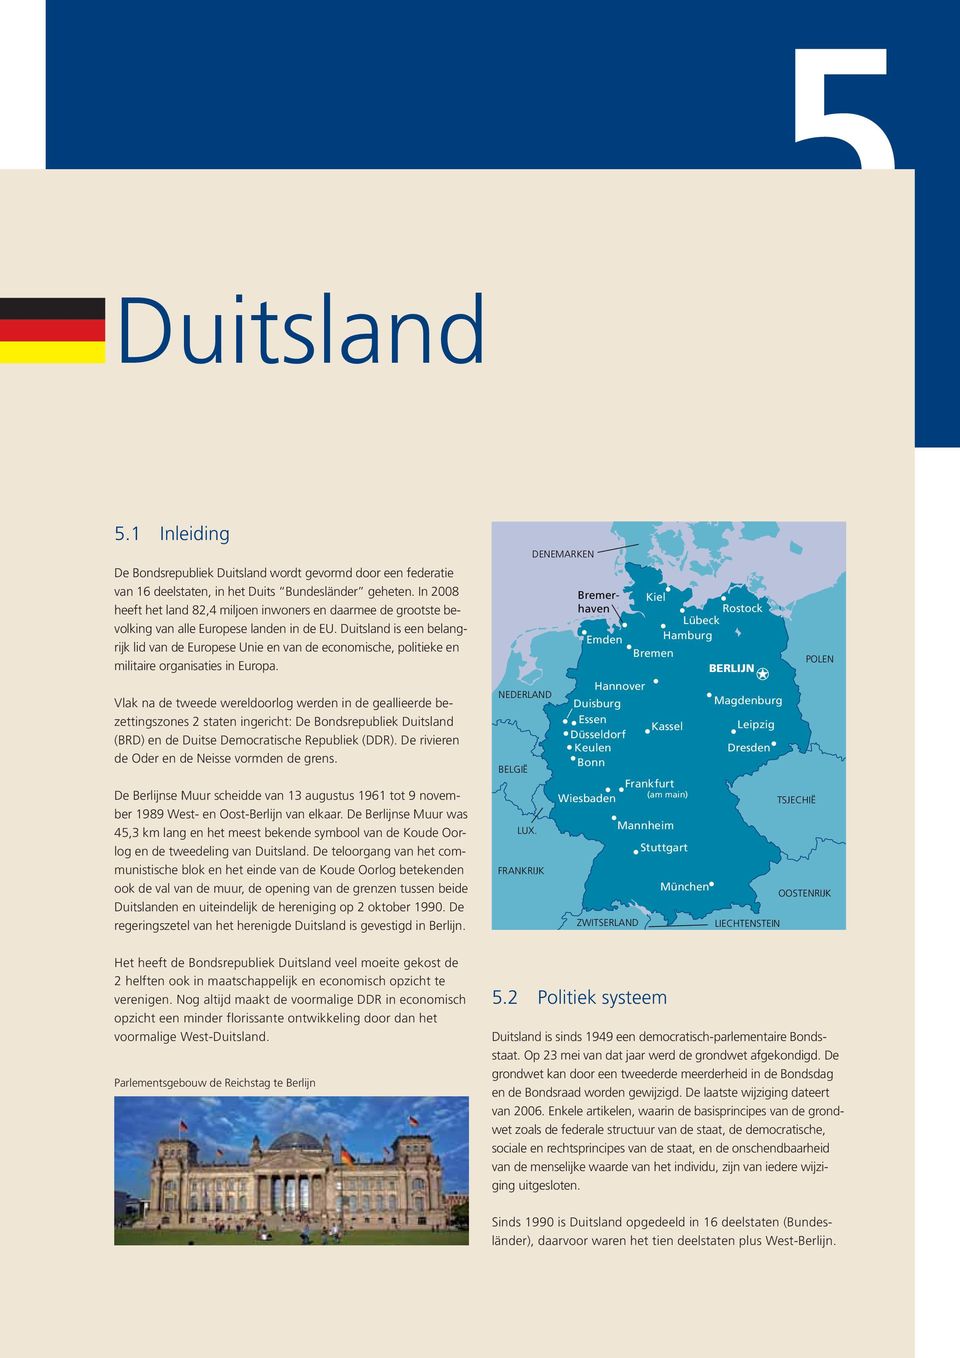 Duitsland is een belangrijk lid van de Europese Unie en van de economische, politieke en militaire organisaties in Europa.